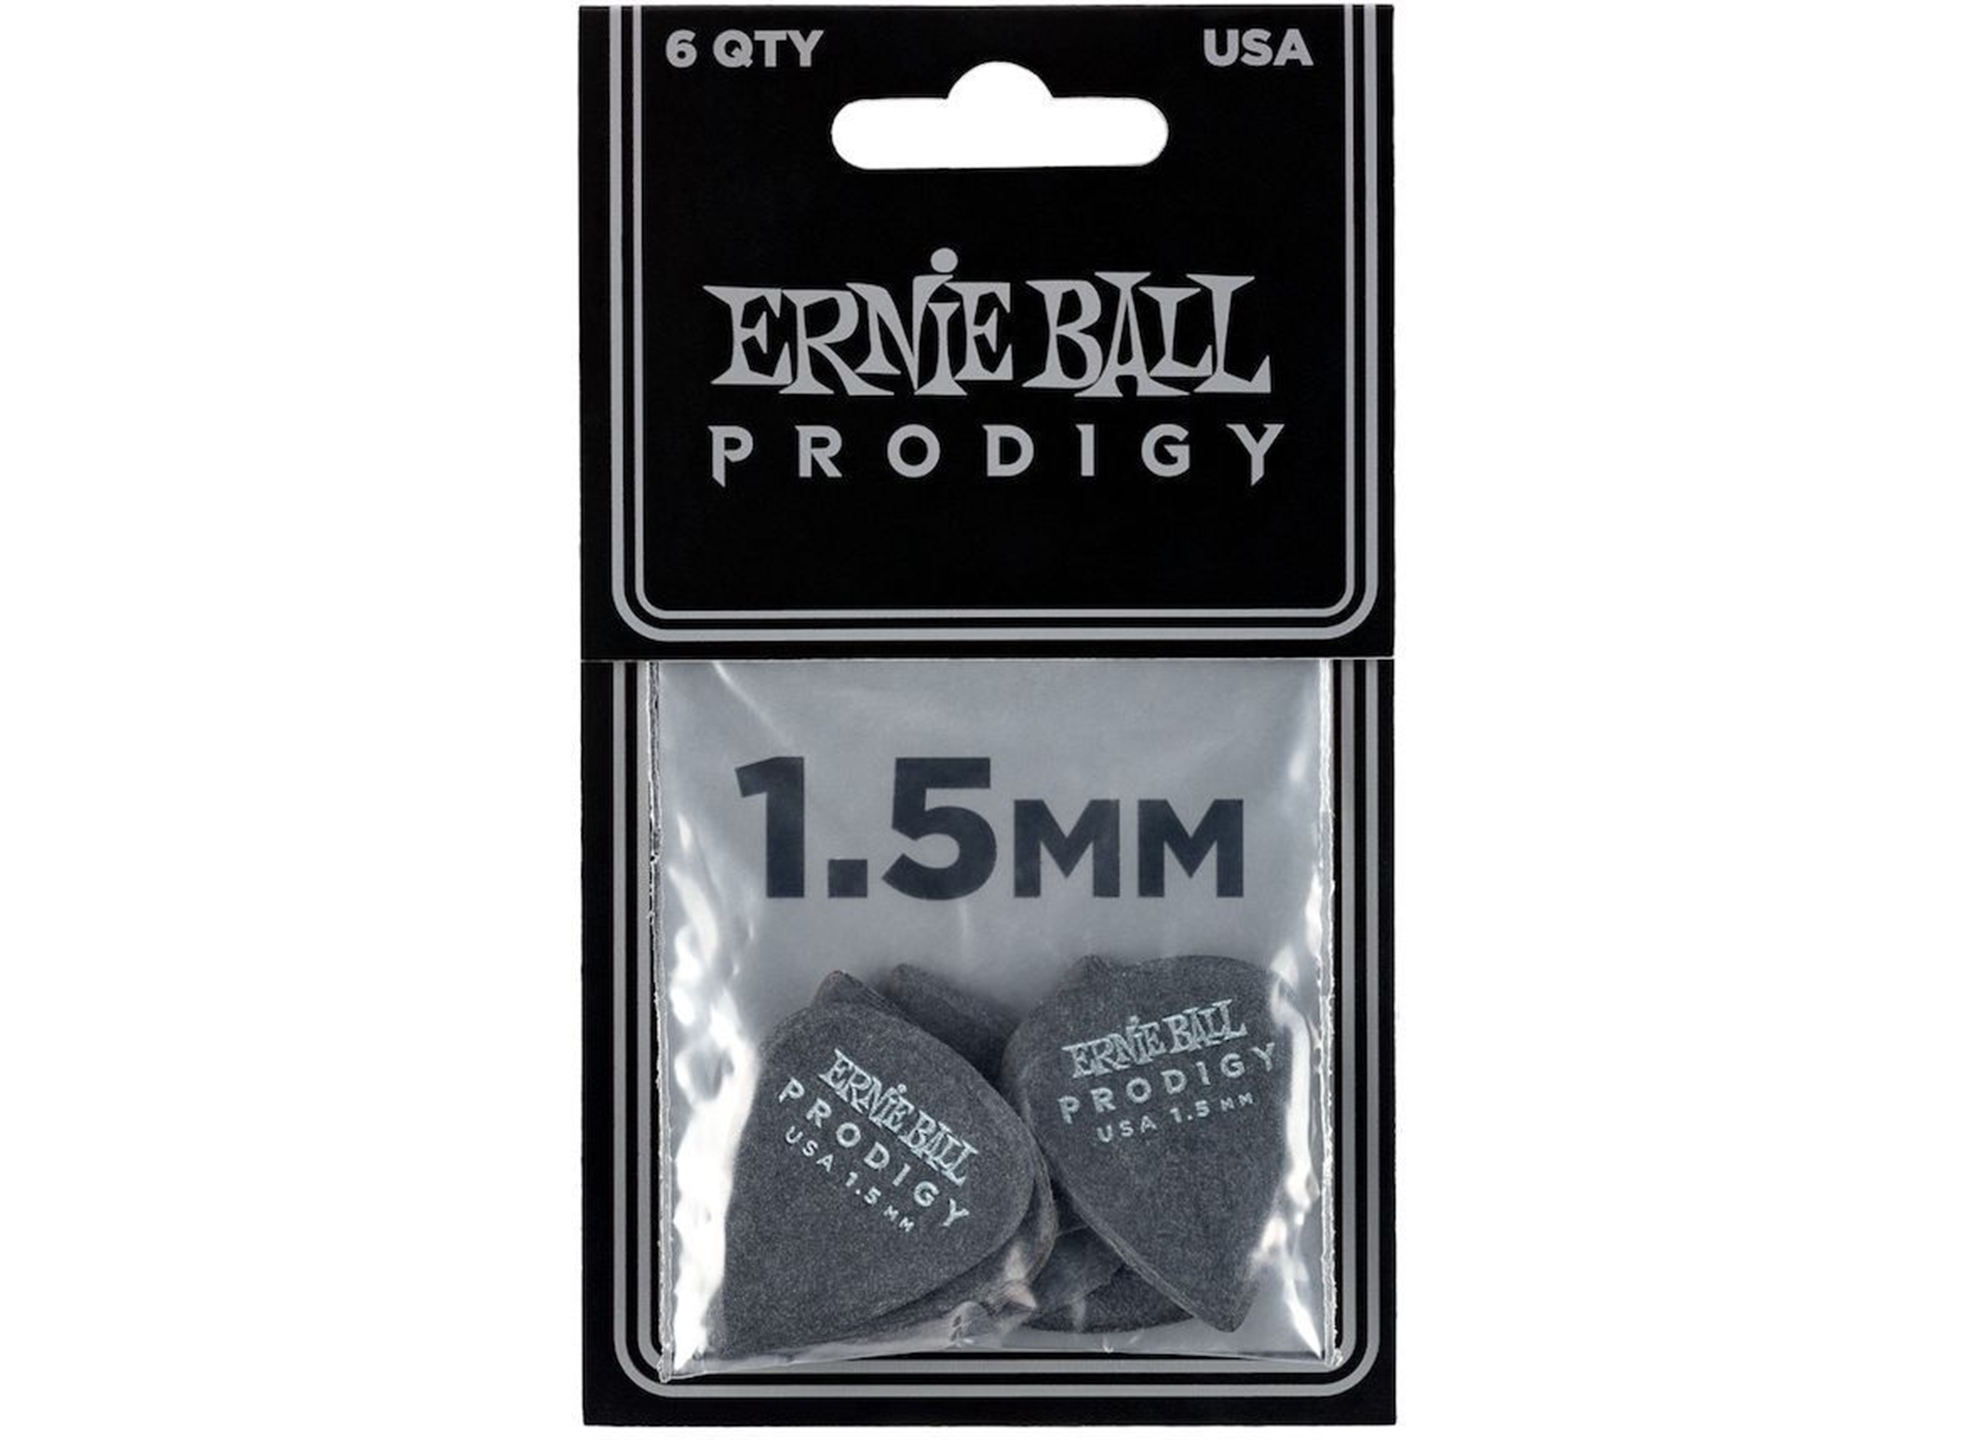 EB-9199 Prodigy Standard 1.5mm (6-pack)